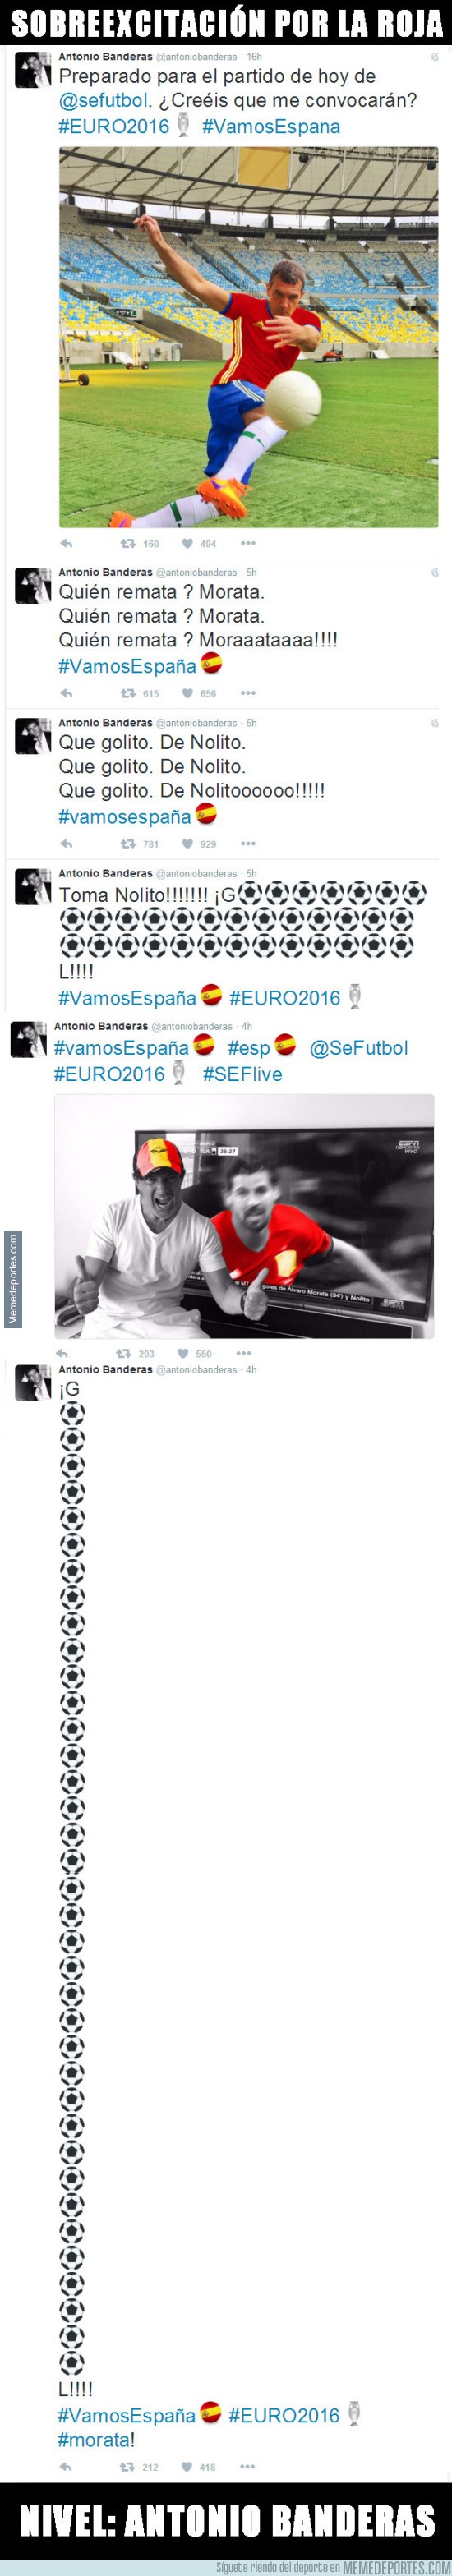 875622 - Los tweets de Antonio Banderas, se vuelve loco con la roja. Hay gente que lo vive mucho